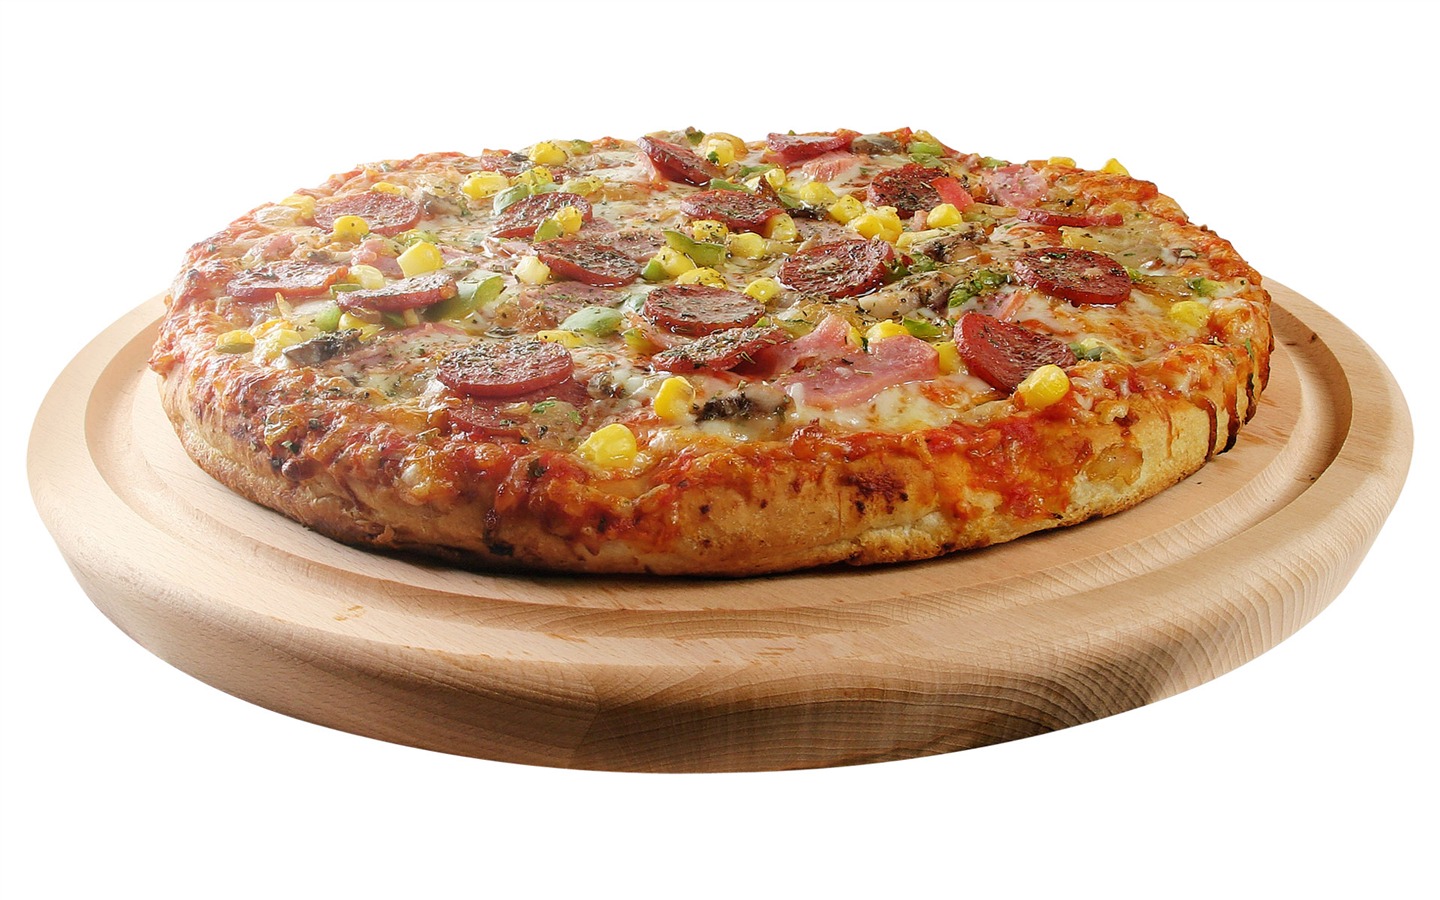 Fondos de pizzerías de Alimentos (3) #14 - 1440x900